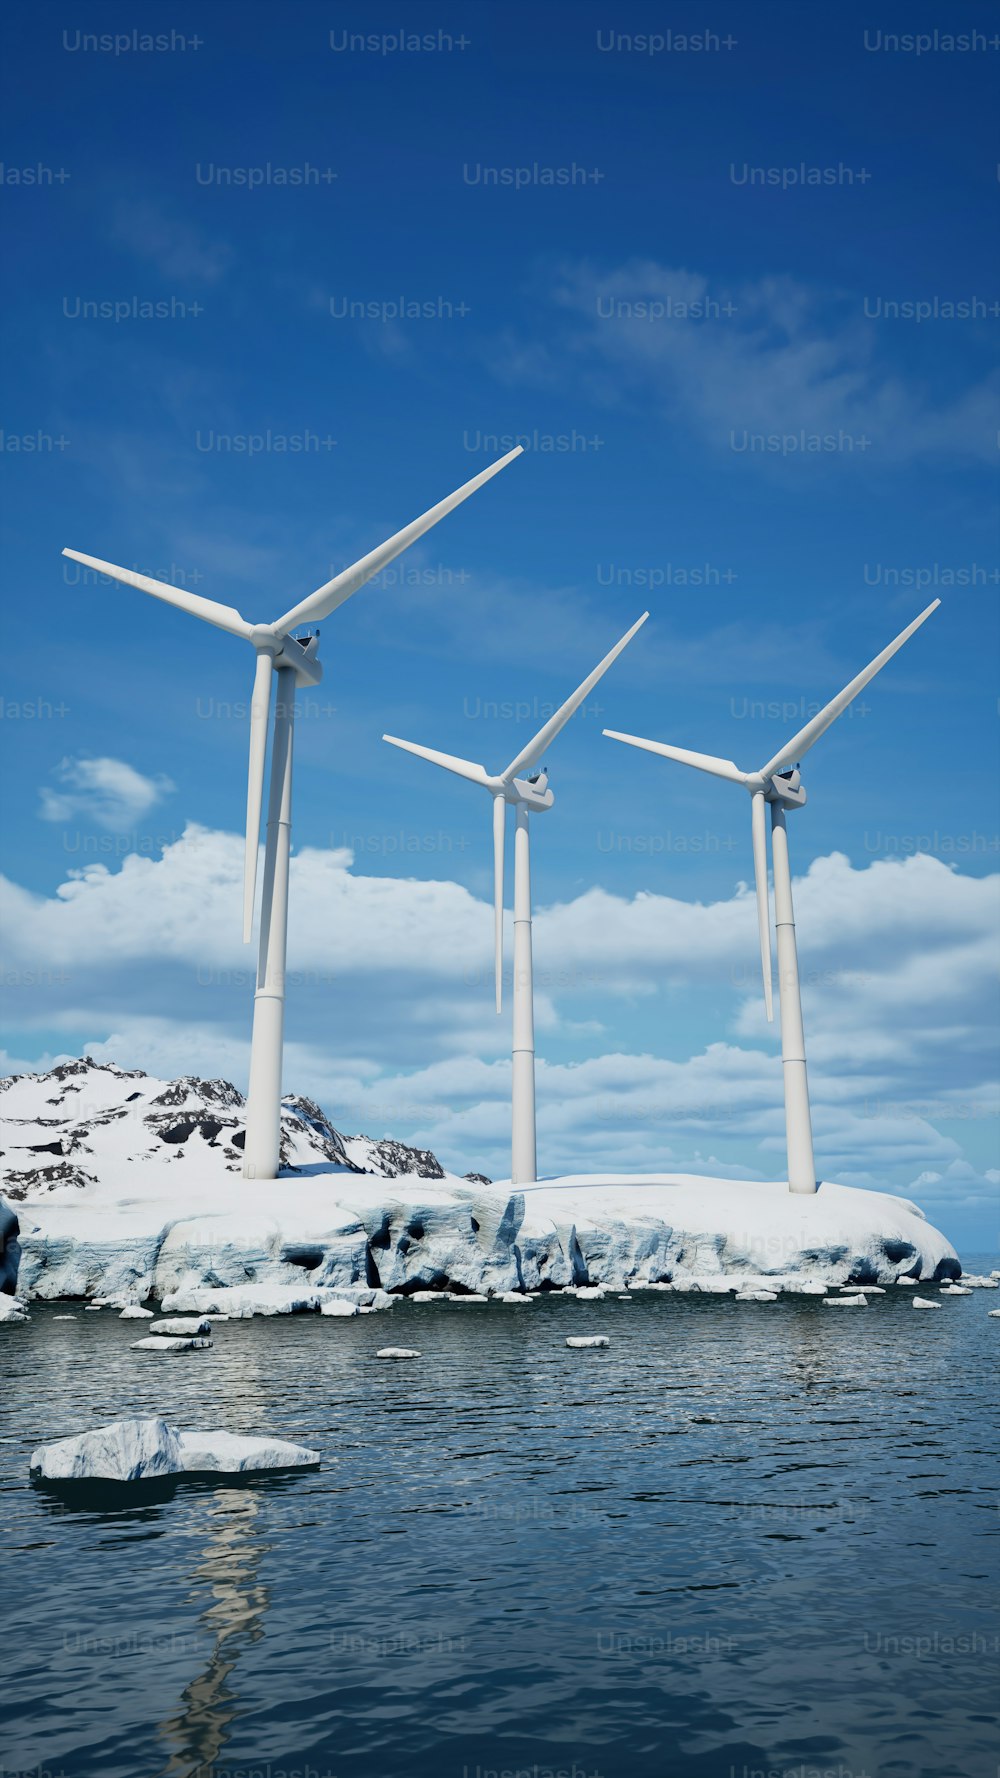 Un gruppo di turbine eoliche in piedi sulla cima di un'isola coperta di neve